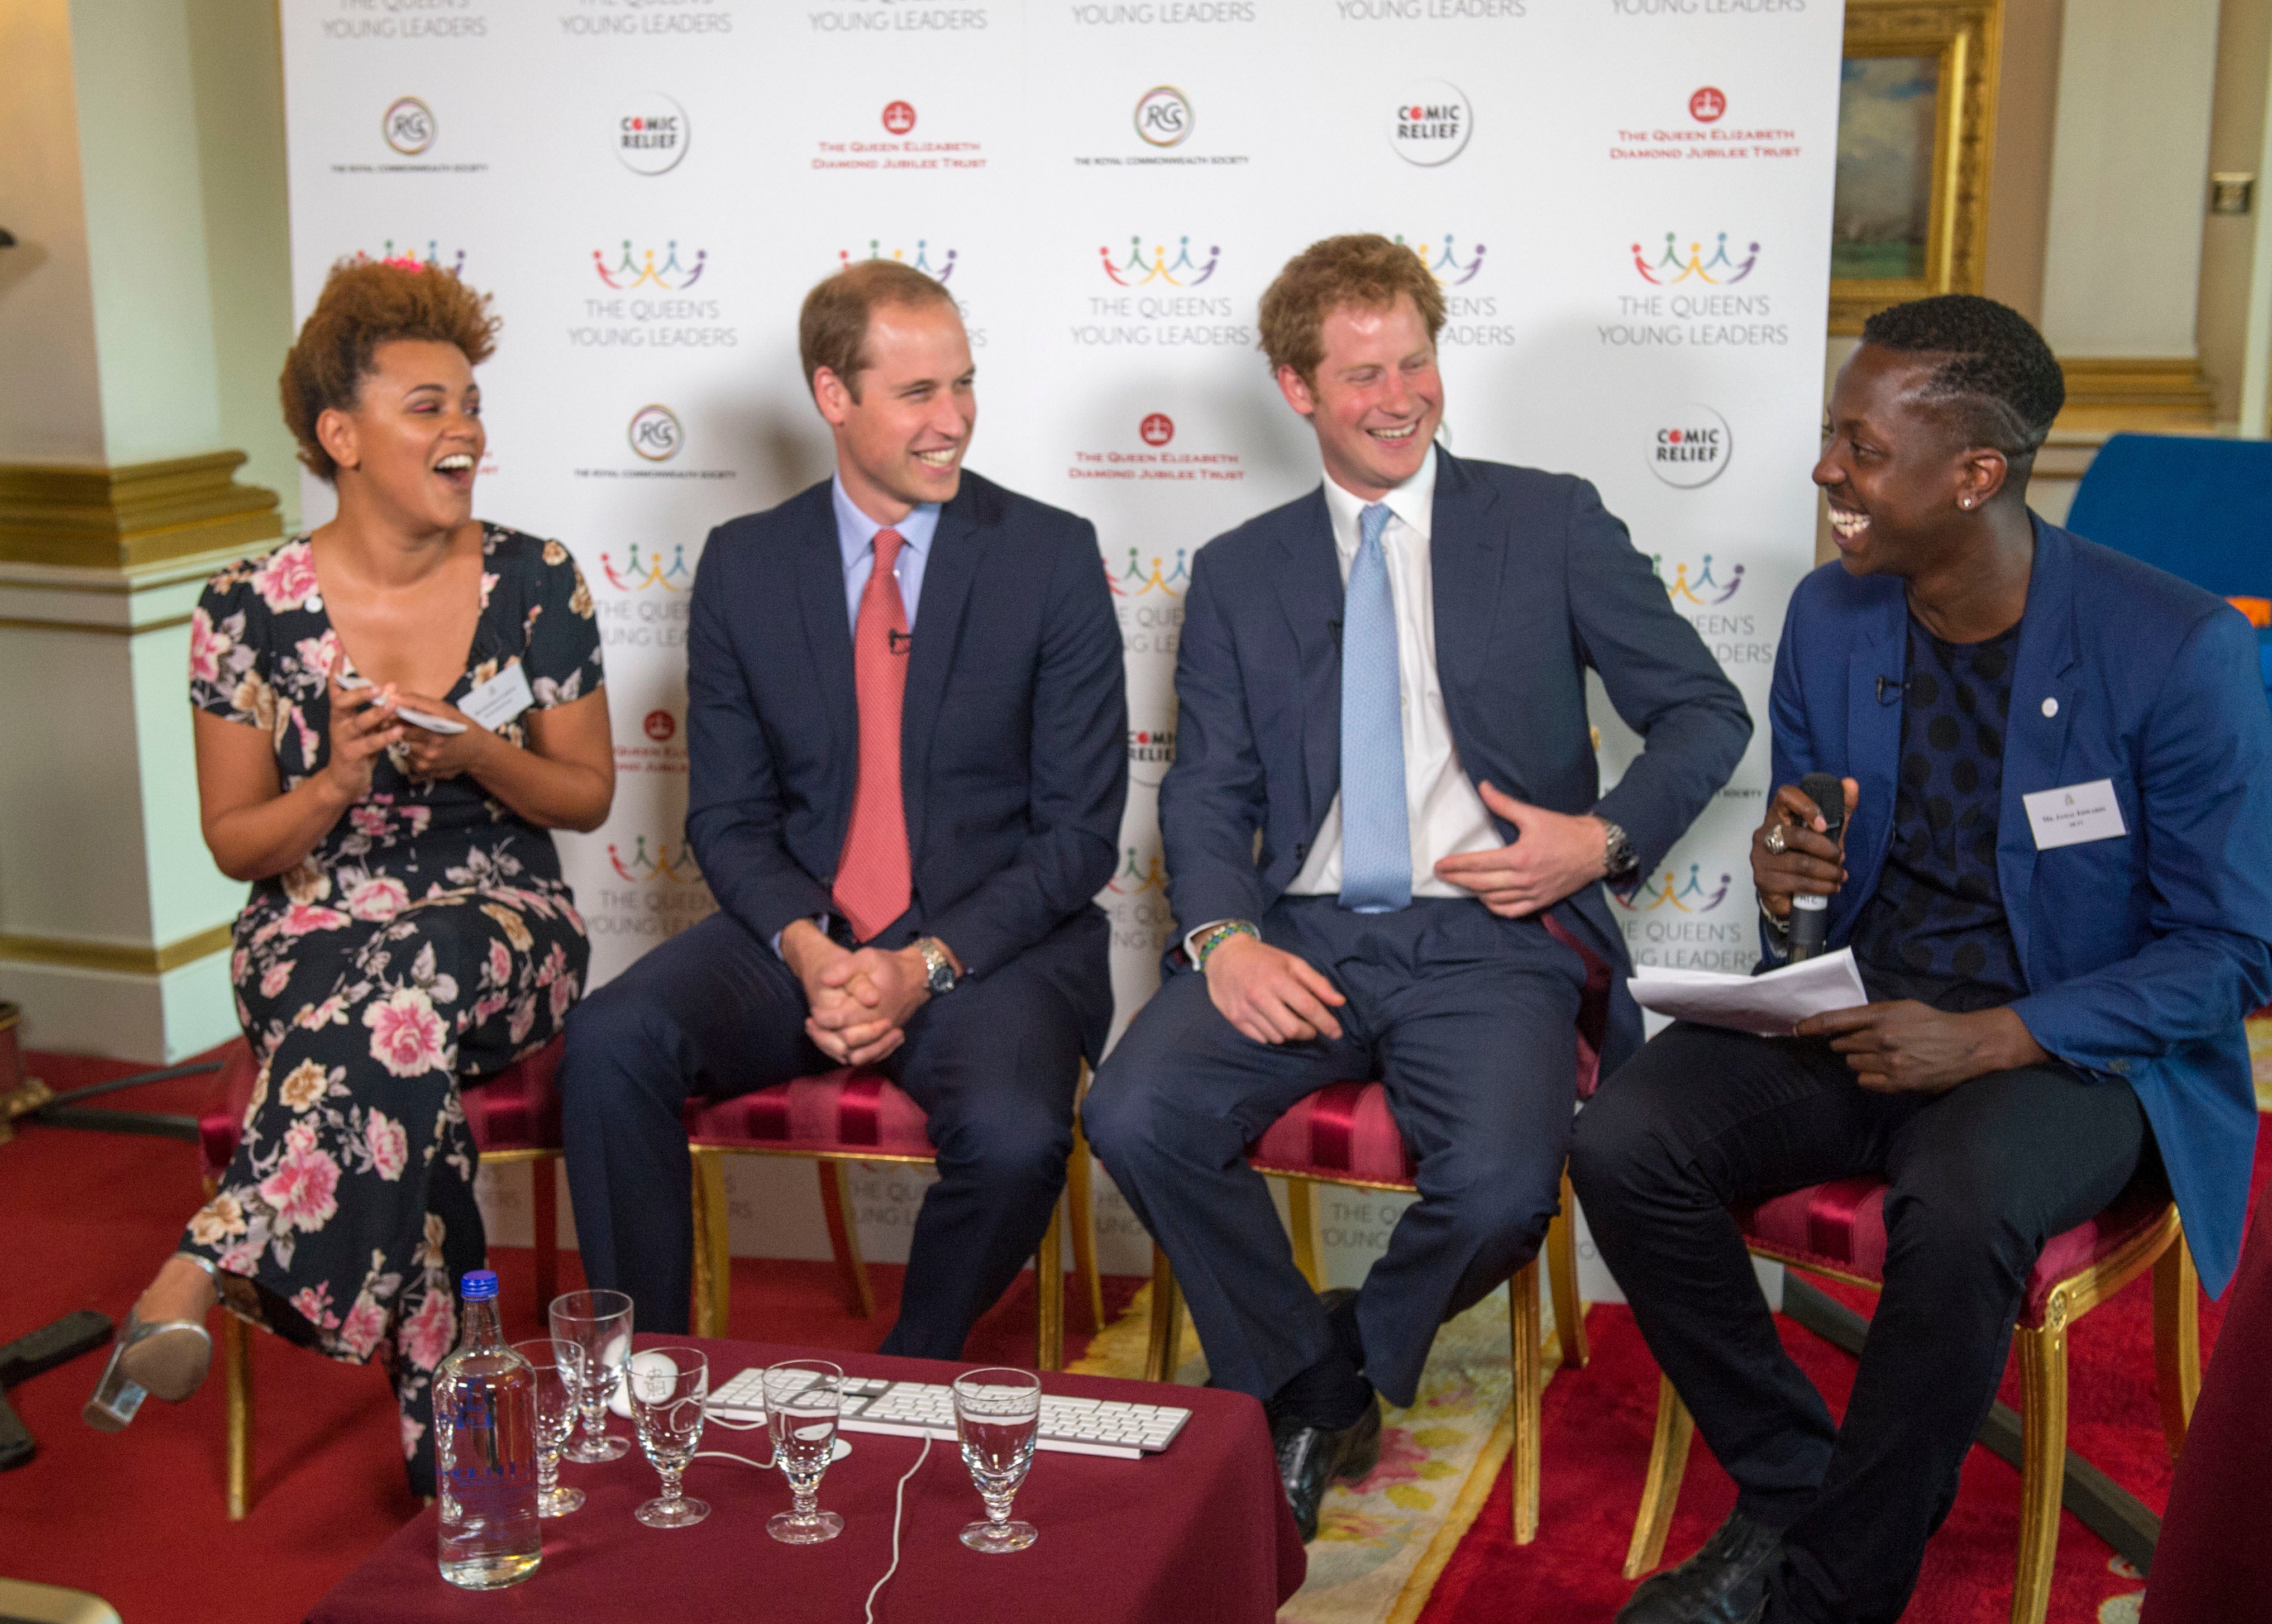 Gemma Cairney, los príncipes, William y Harry, y Jamal Edwards durante el lanzamiento del programa The Queen’s Young Leaders en el Palacio de Buckingham Palace en julio de 2014